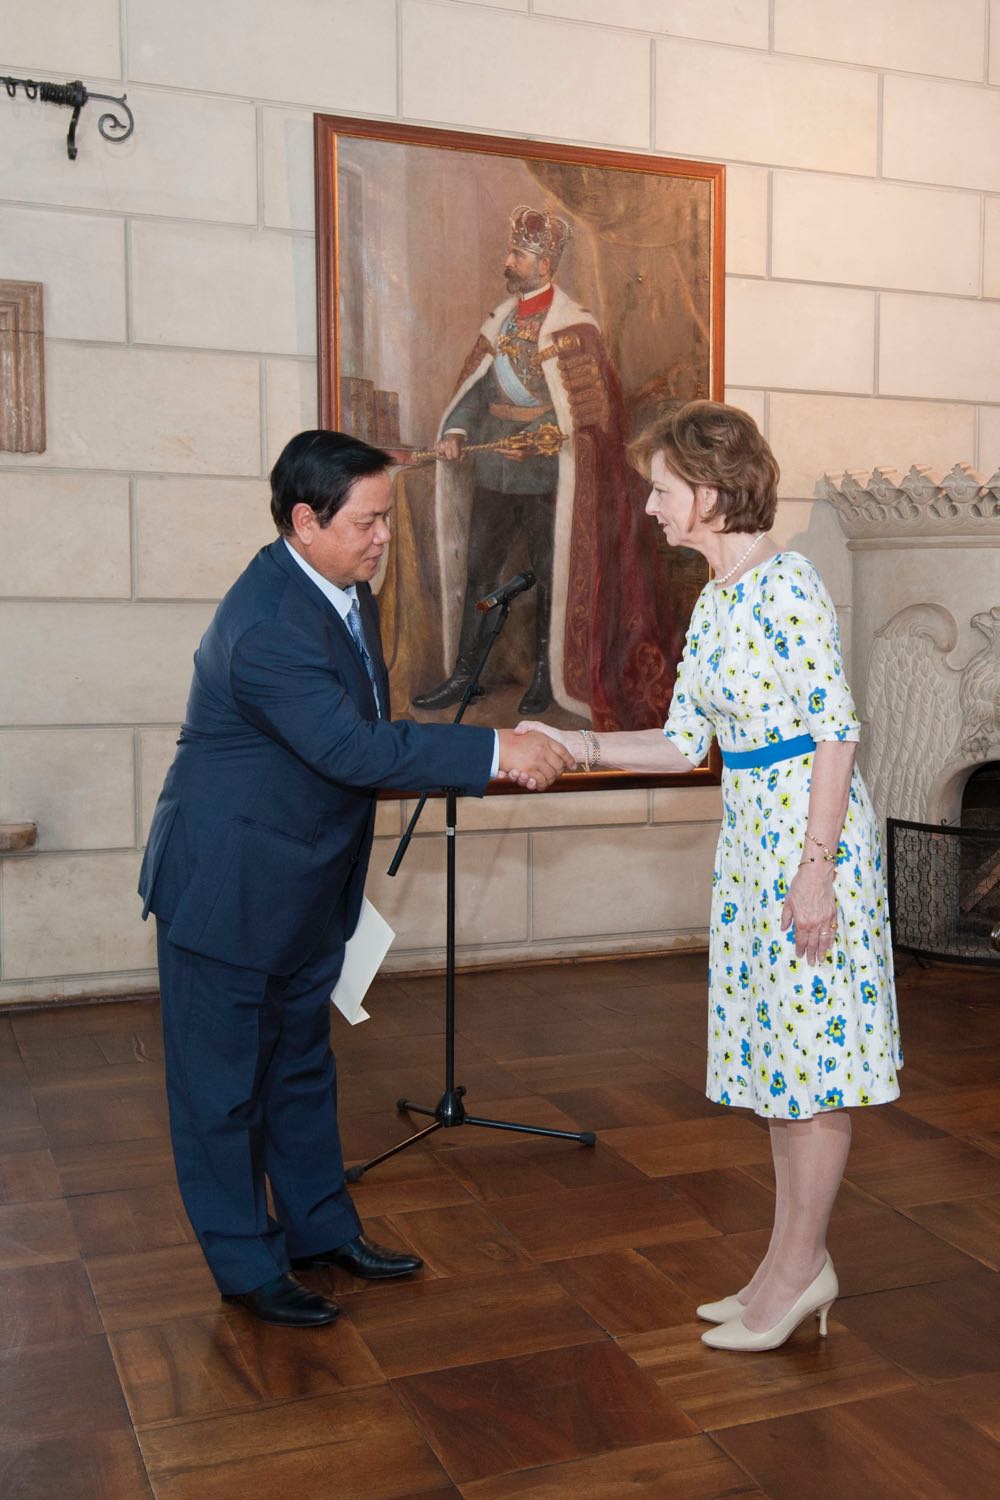 Custodele Coroanei romane a primit la Palatul Elisabeta o delegatie din Regatul Cambodgiei, 10 iulie 2017 ©Daniel Angelescu